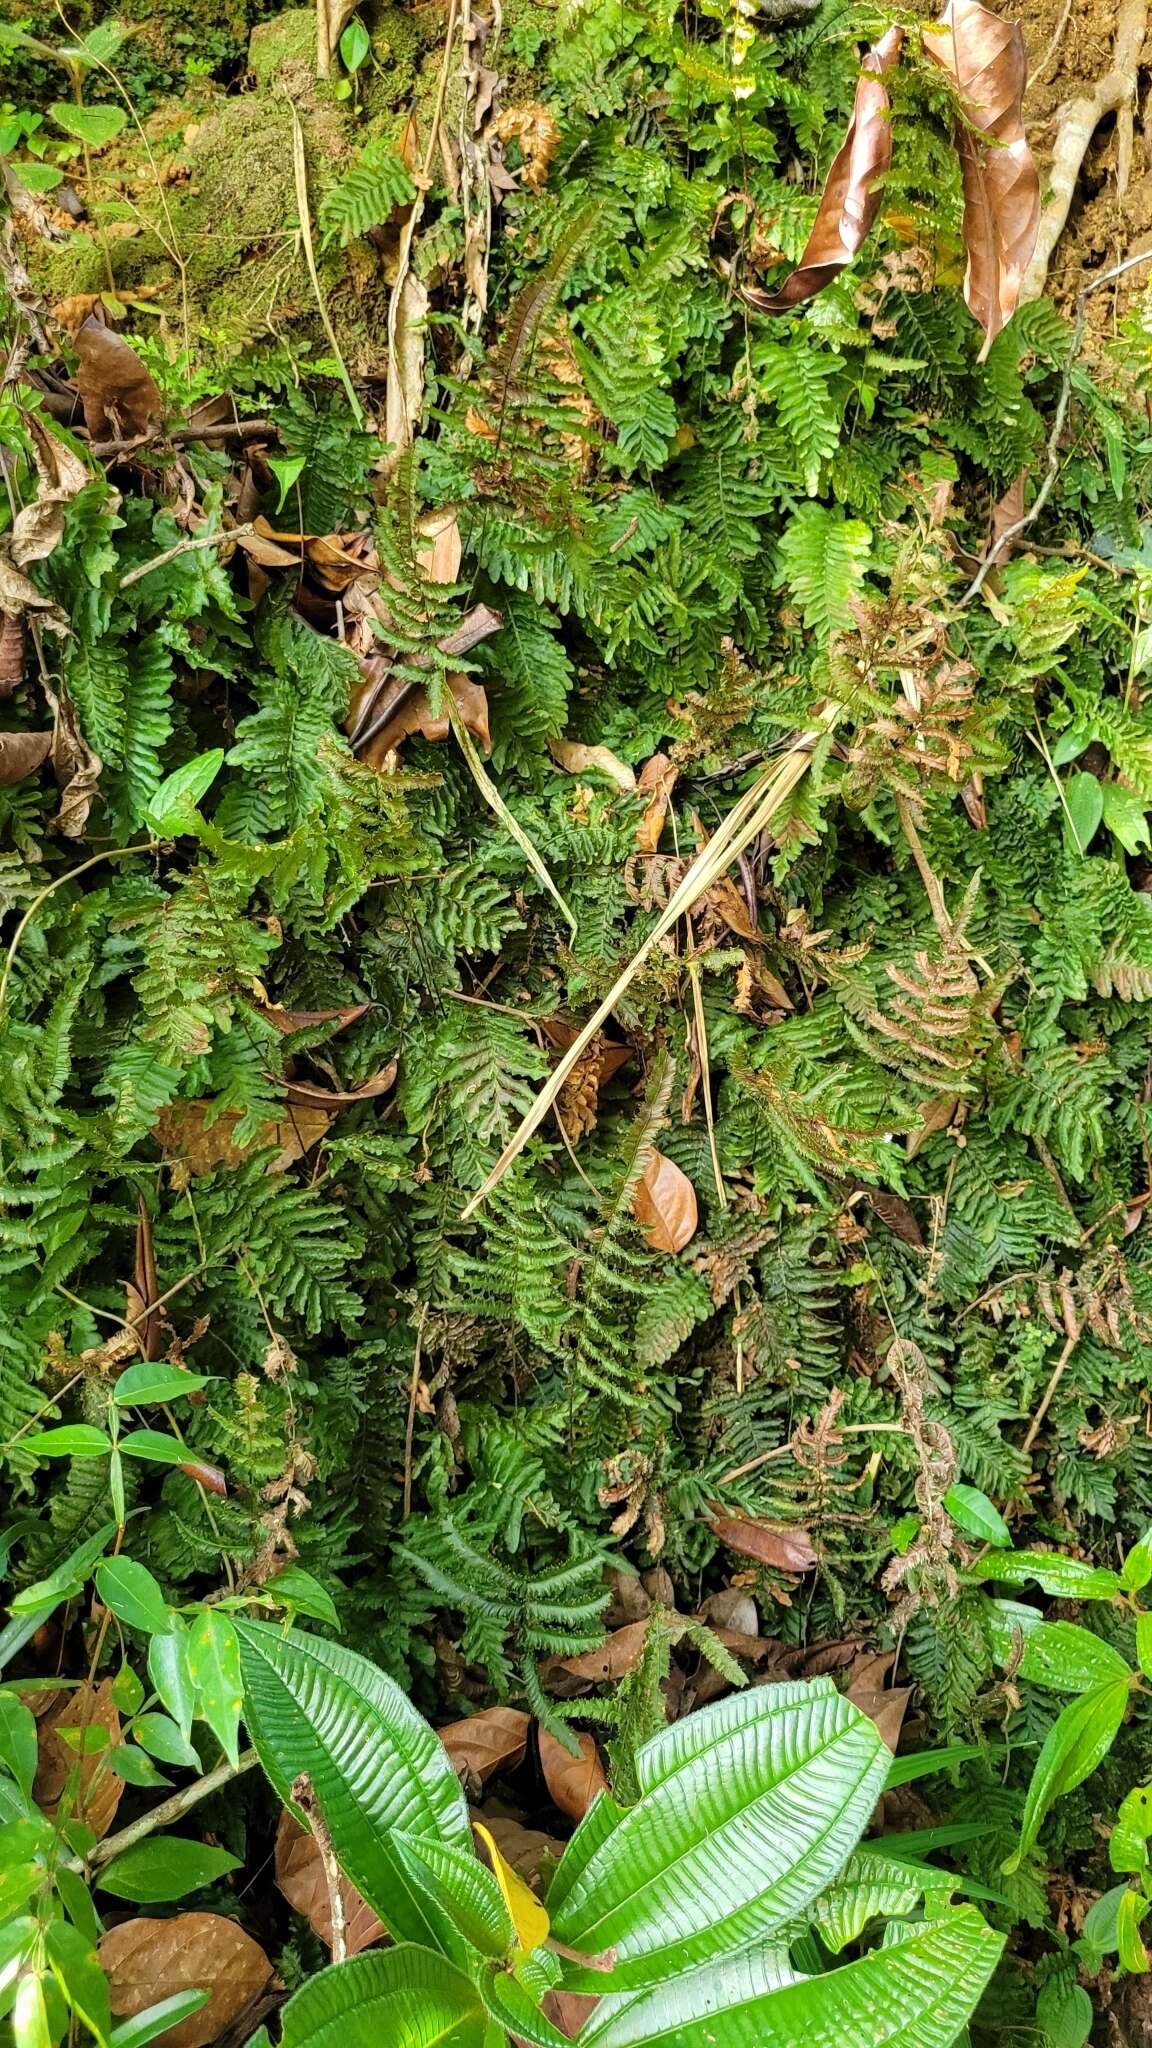 Image of tansy bristle fern